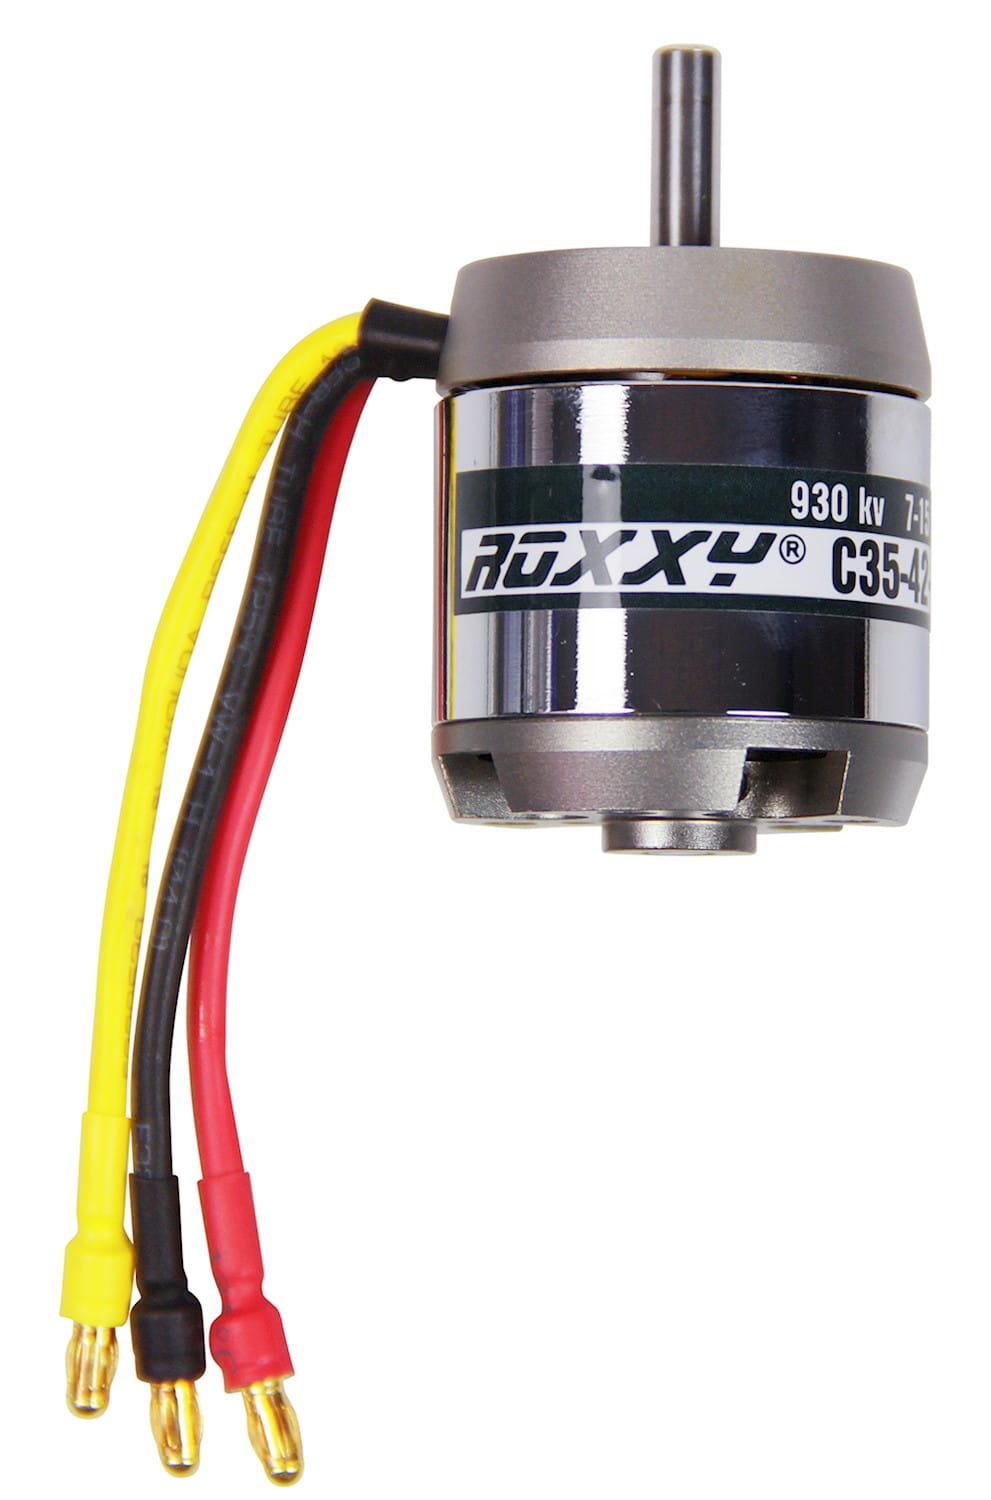 Multiplex ROXXY Brushless Motor BL Outrunner C35-42-930kV